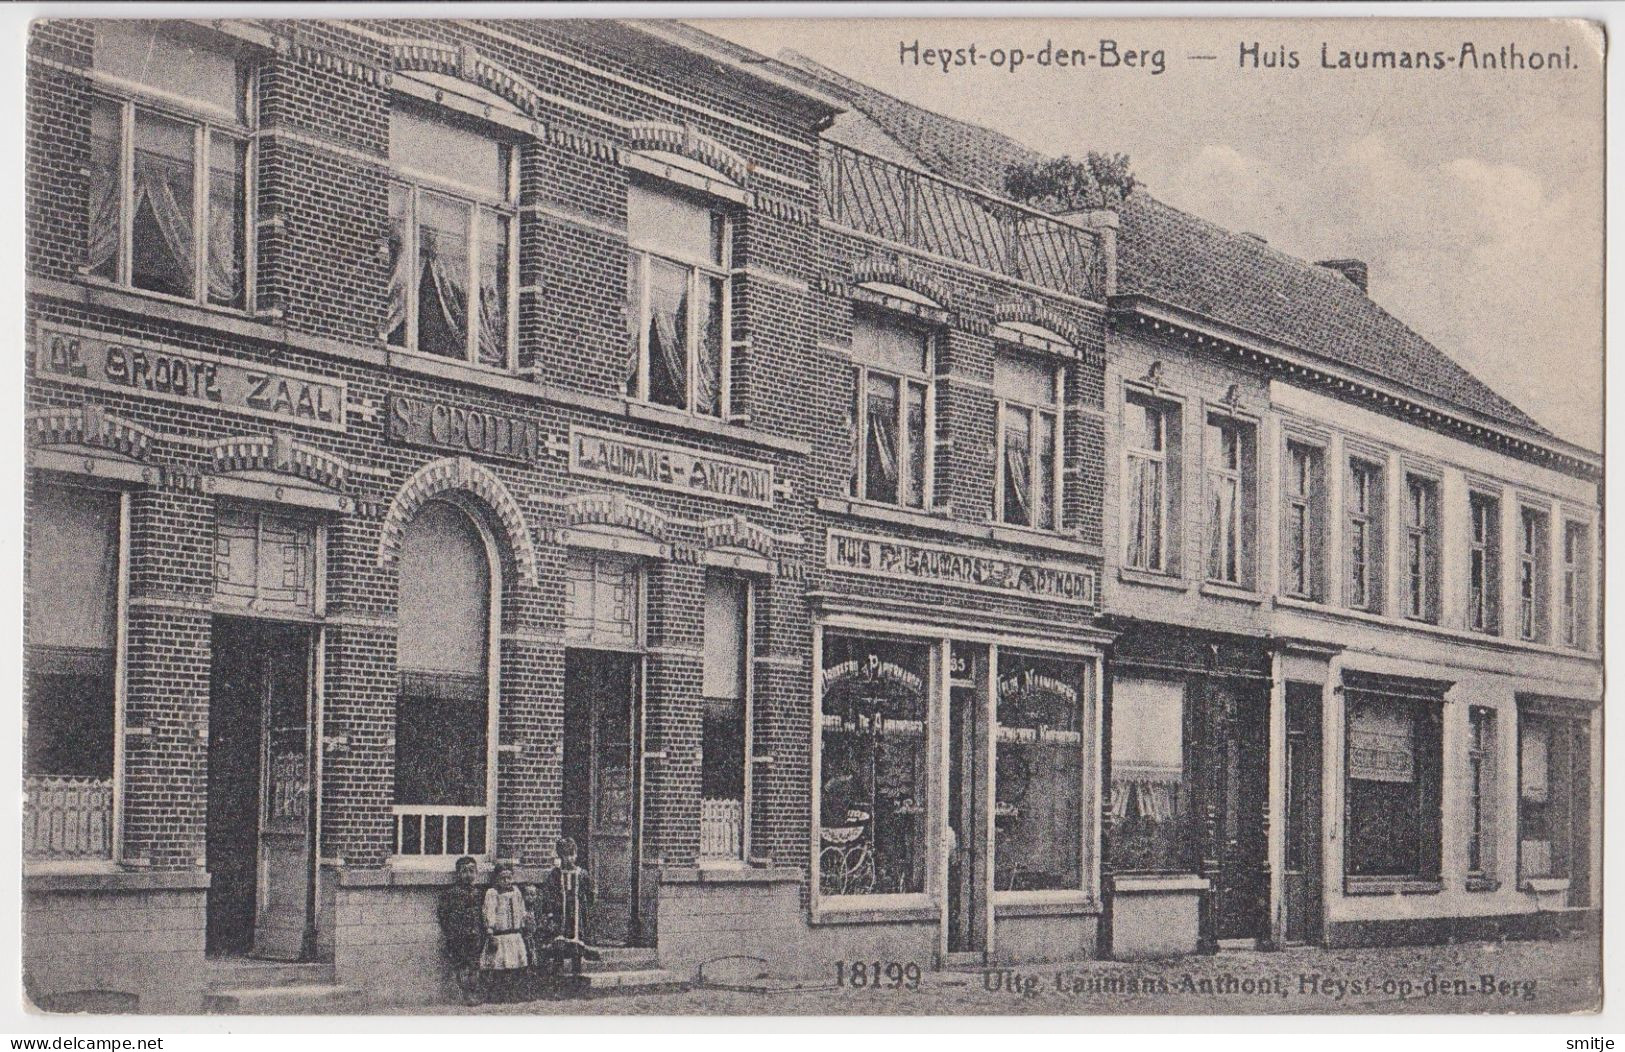 HEIST OP DEN BERG 1915 HUIS LAUMANS ANTHONI - 18199 ANDERE UITGAVE - FELDPOST LANDSTURM BATAILLON HAGEN  4 COMP - Heist-op-den-Berg